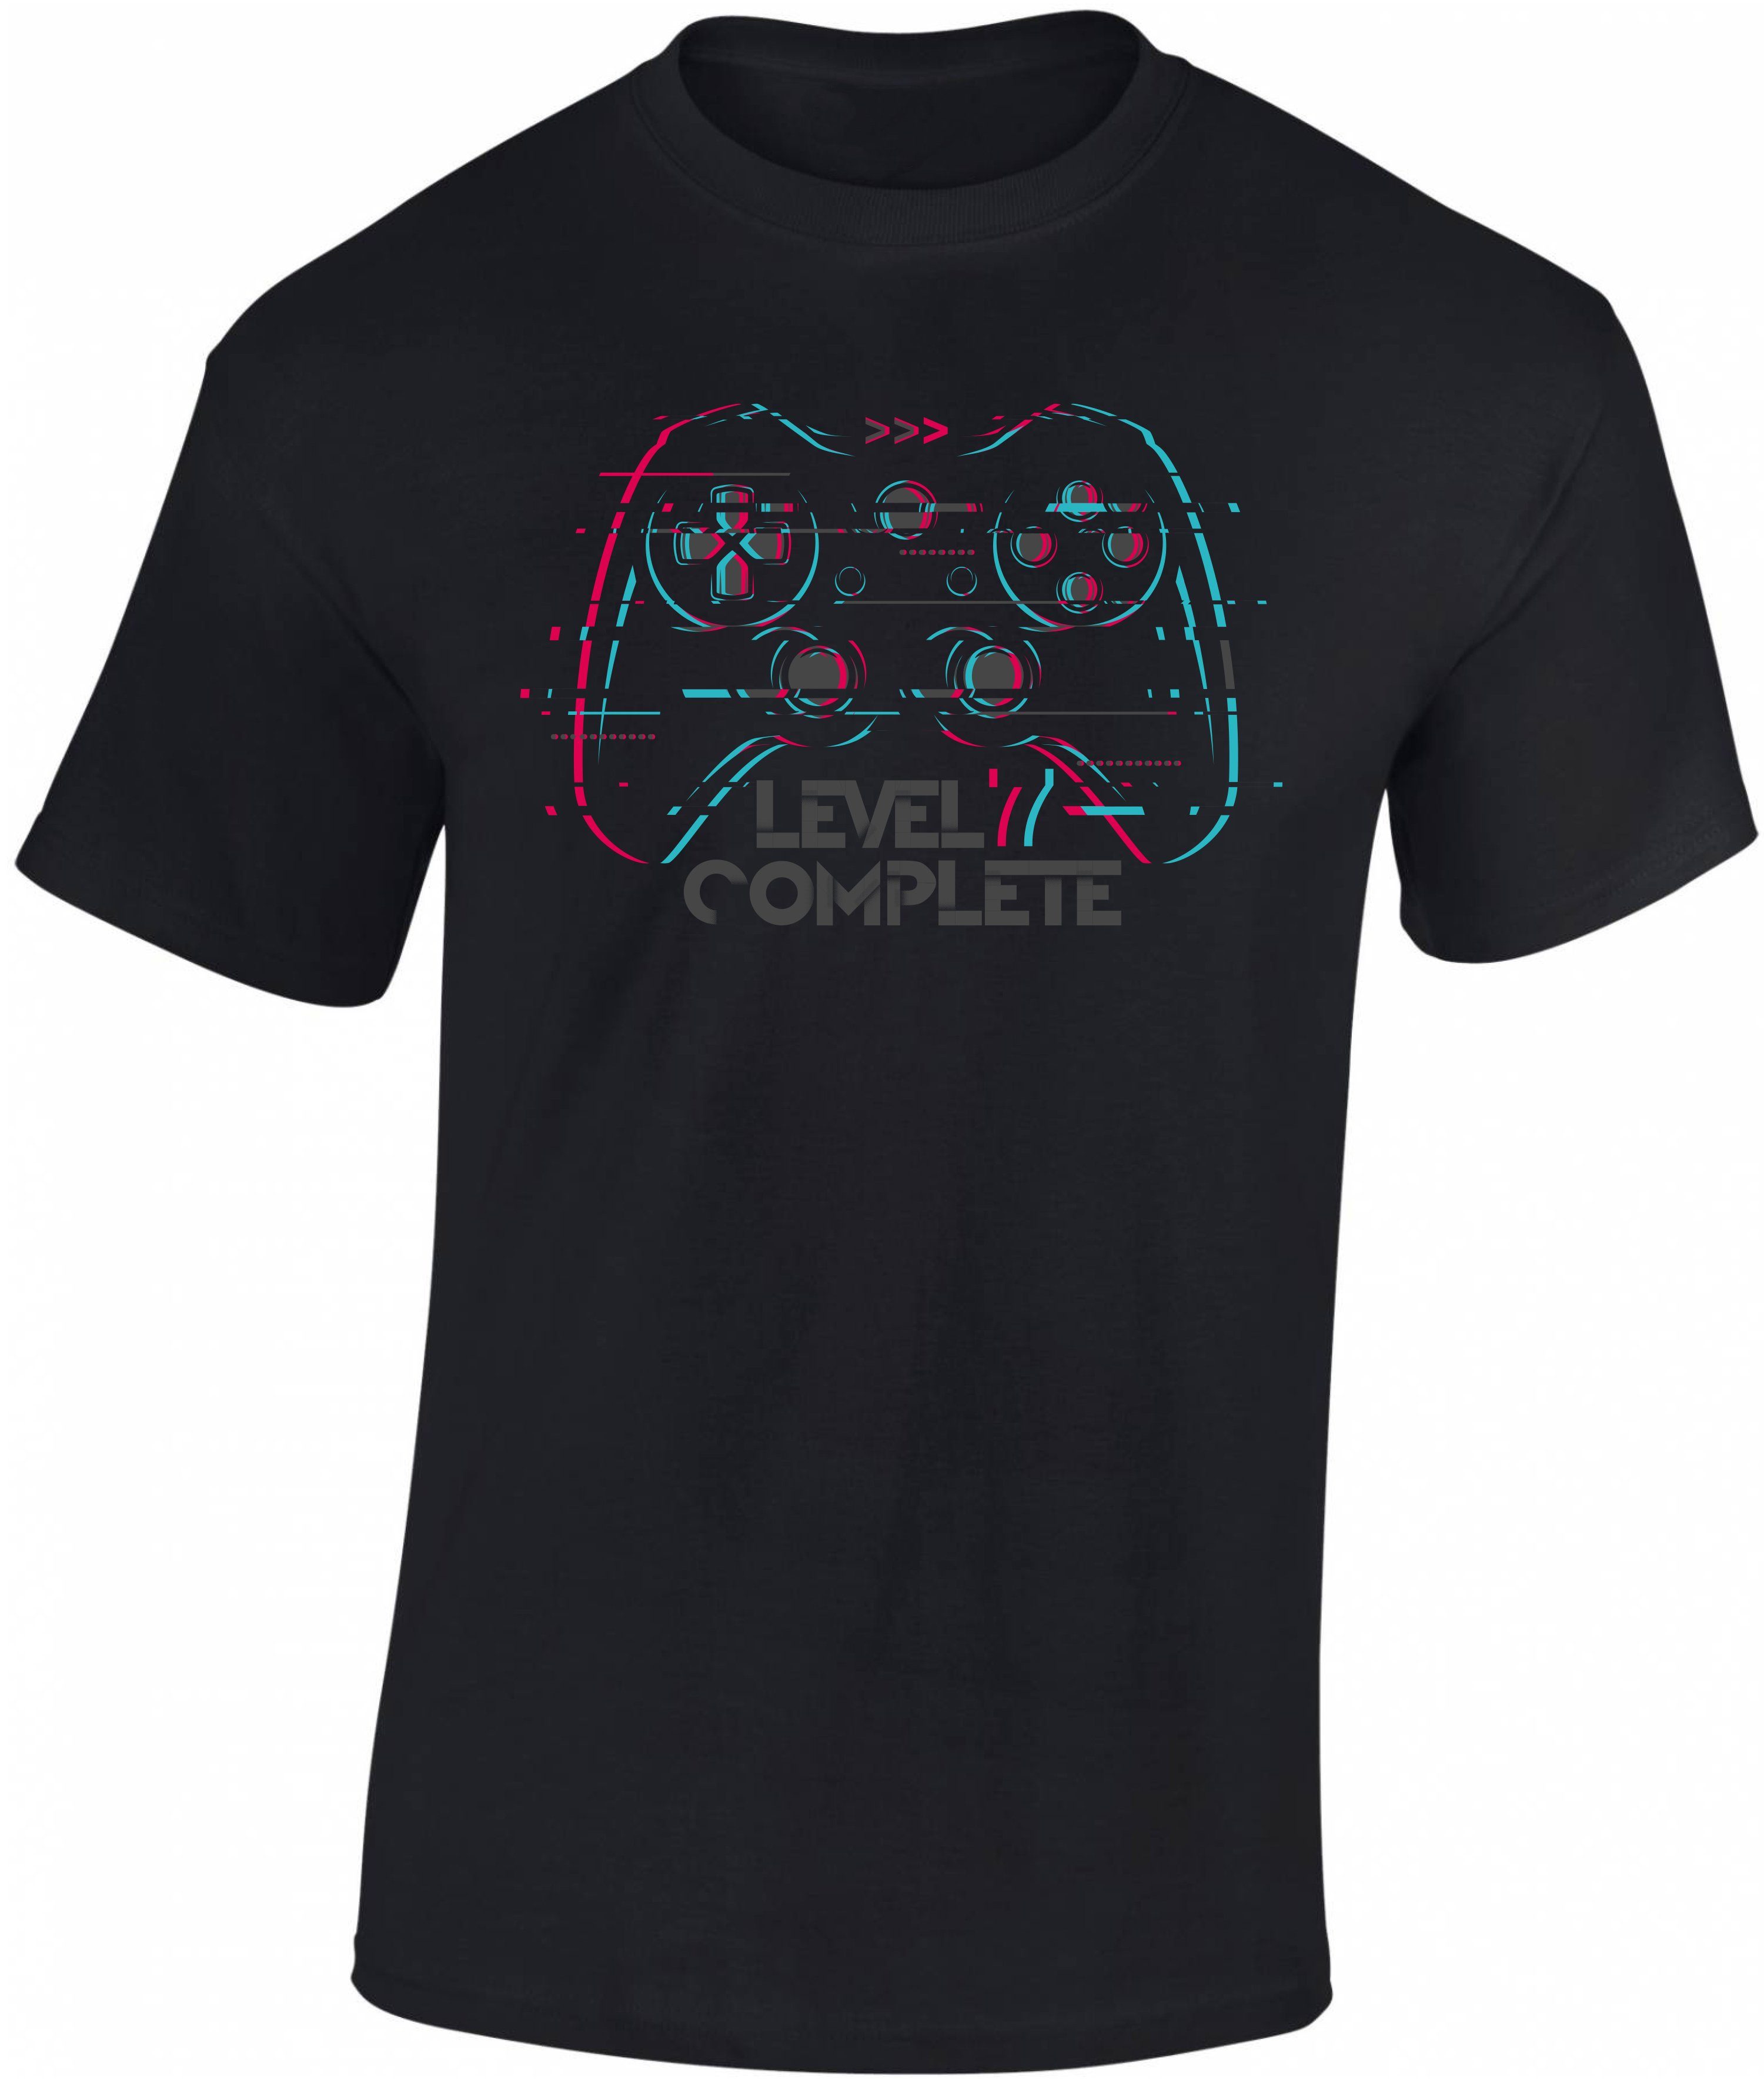 Baddery Print-Shirt Complete Gamer Jungen Baumwolle zum Geburtstag 7 : Level T-Shirt 7. aus Siebdruck, hochwertiger